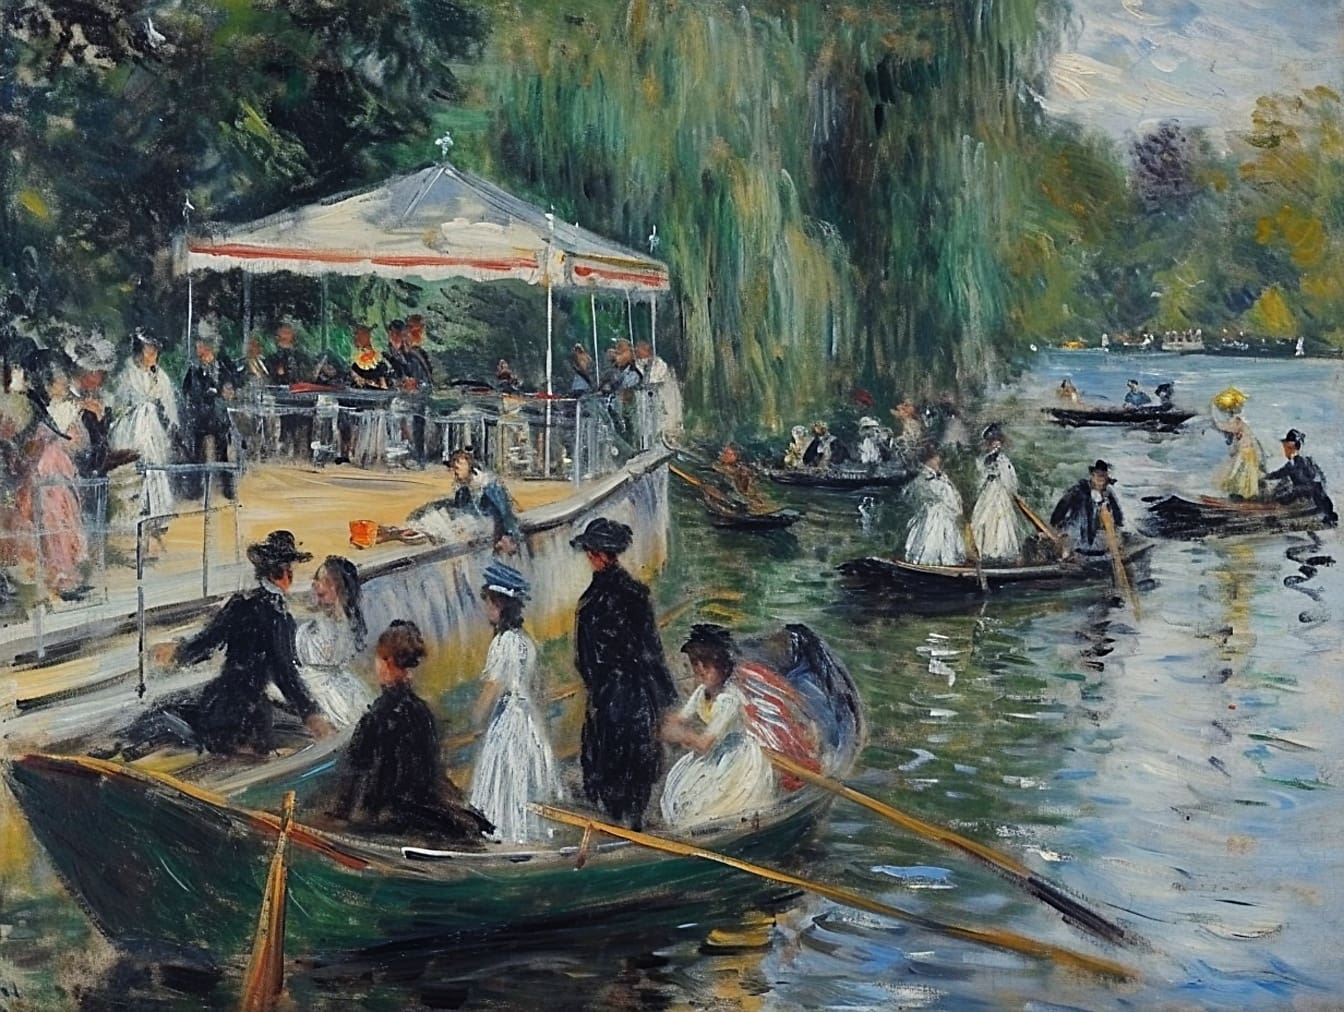 Olieverfschilderij van mensen in boten op een rivier met een 19e-eeuwse levensstijl van rijke mensen